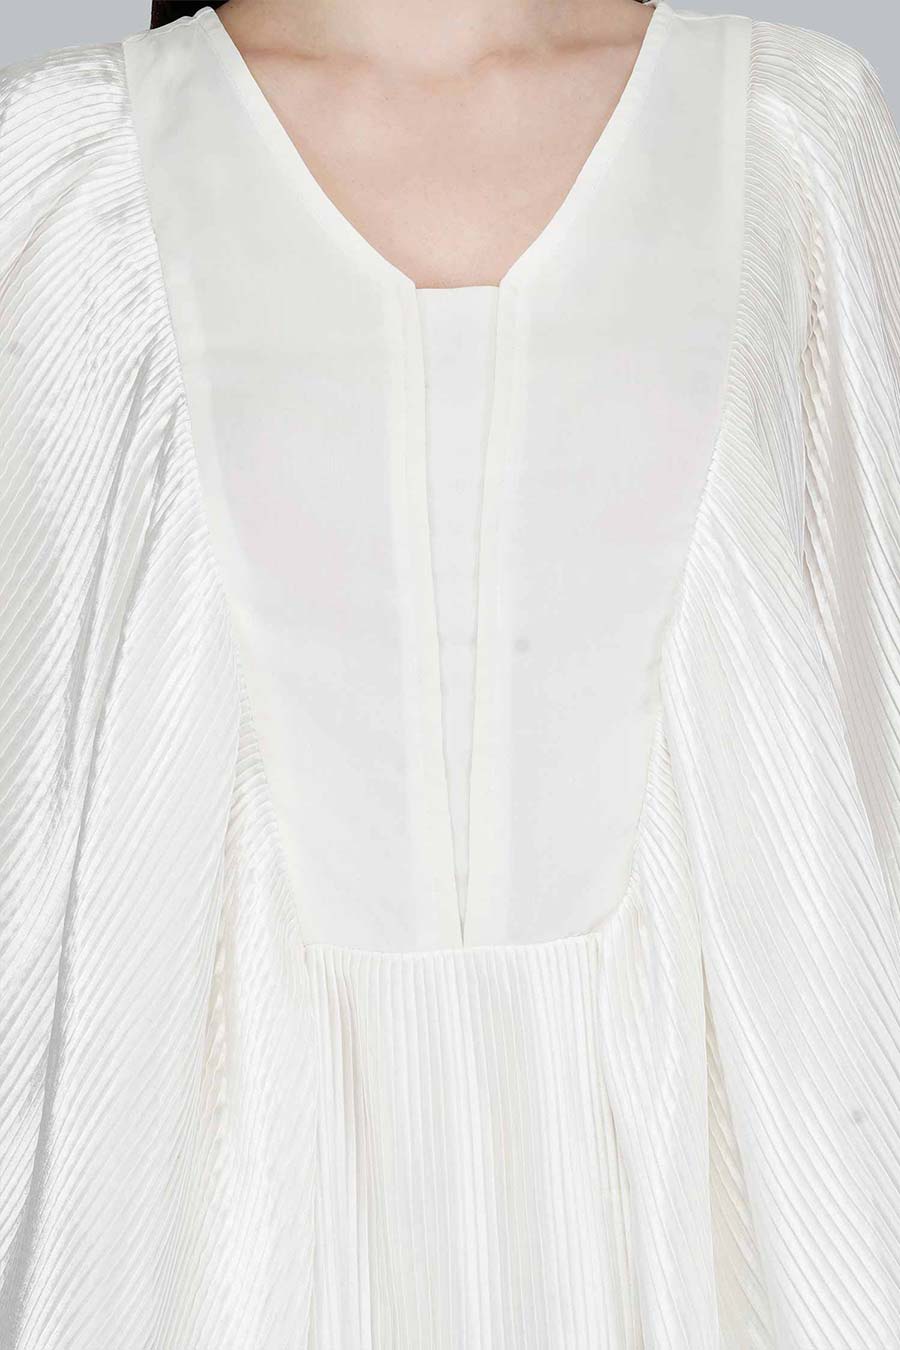 Flutter Sleeve White Satin Dress